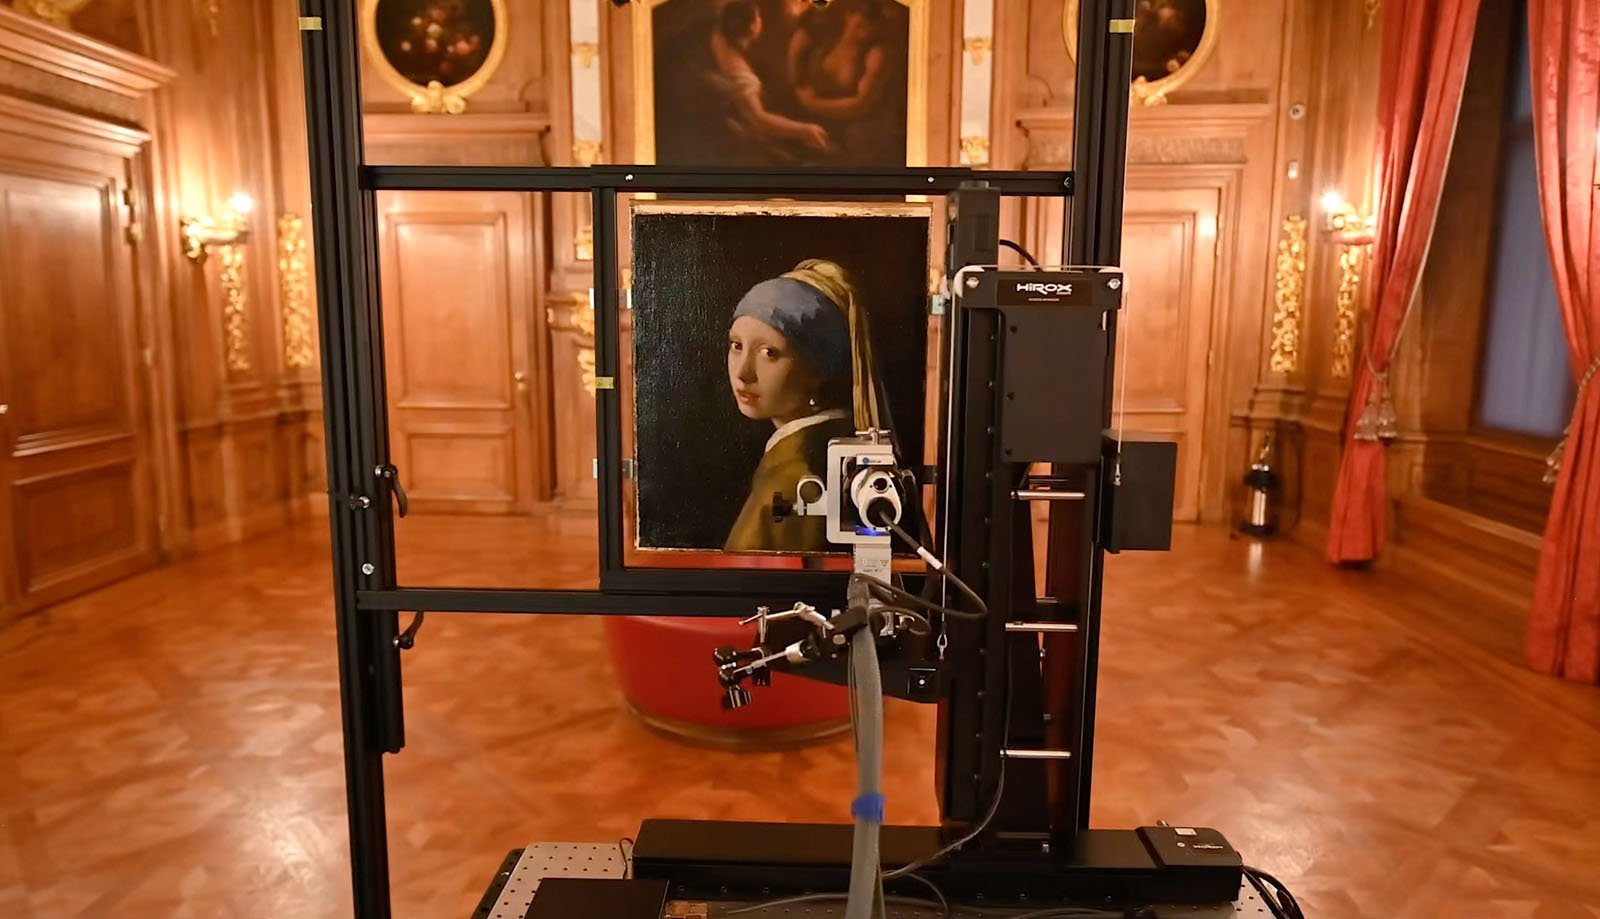 Hirox Europe 108-gigapixel 3D scan of Vermeer